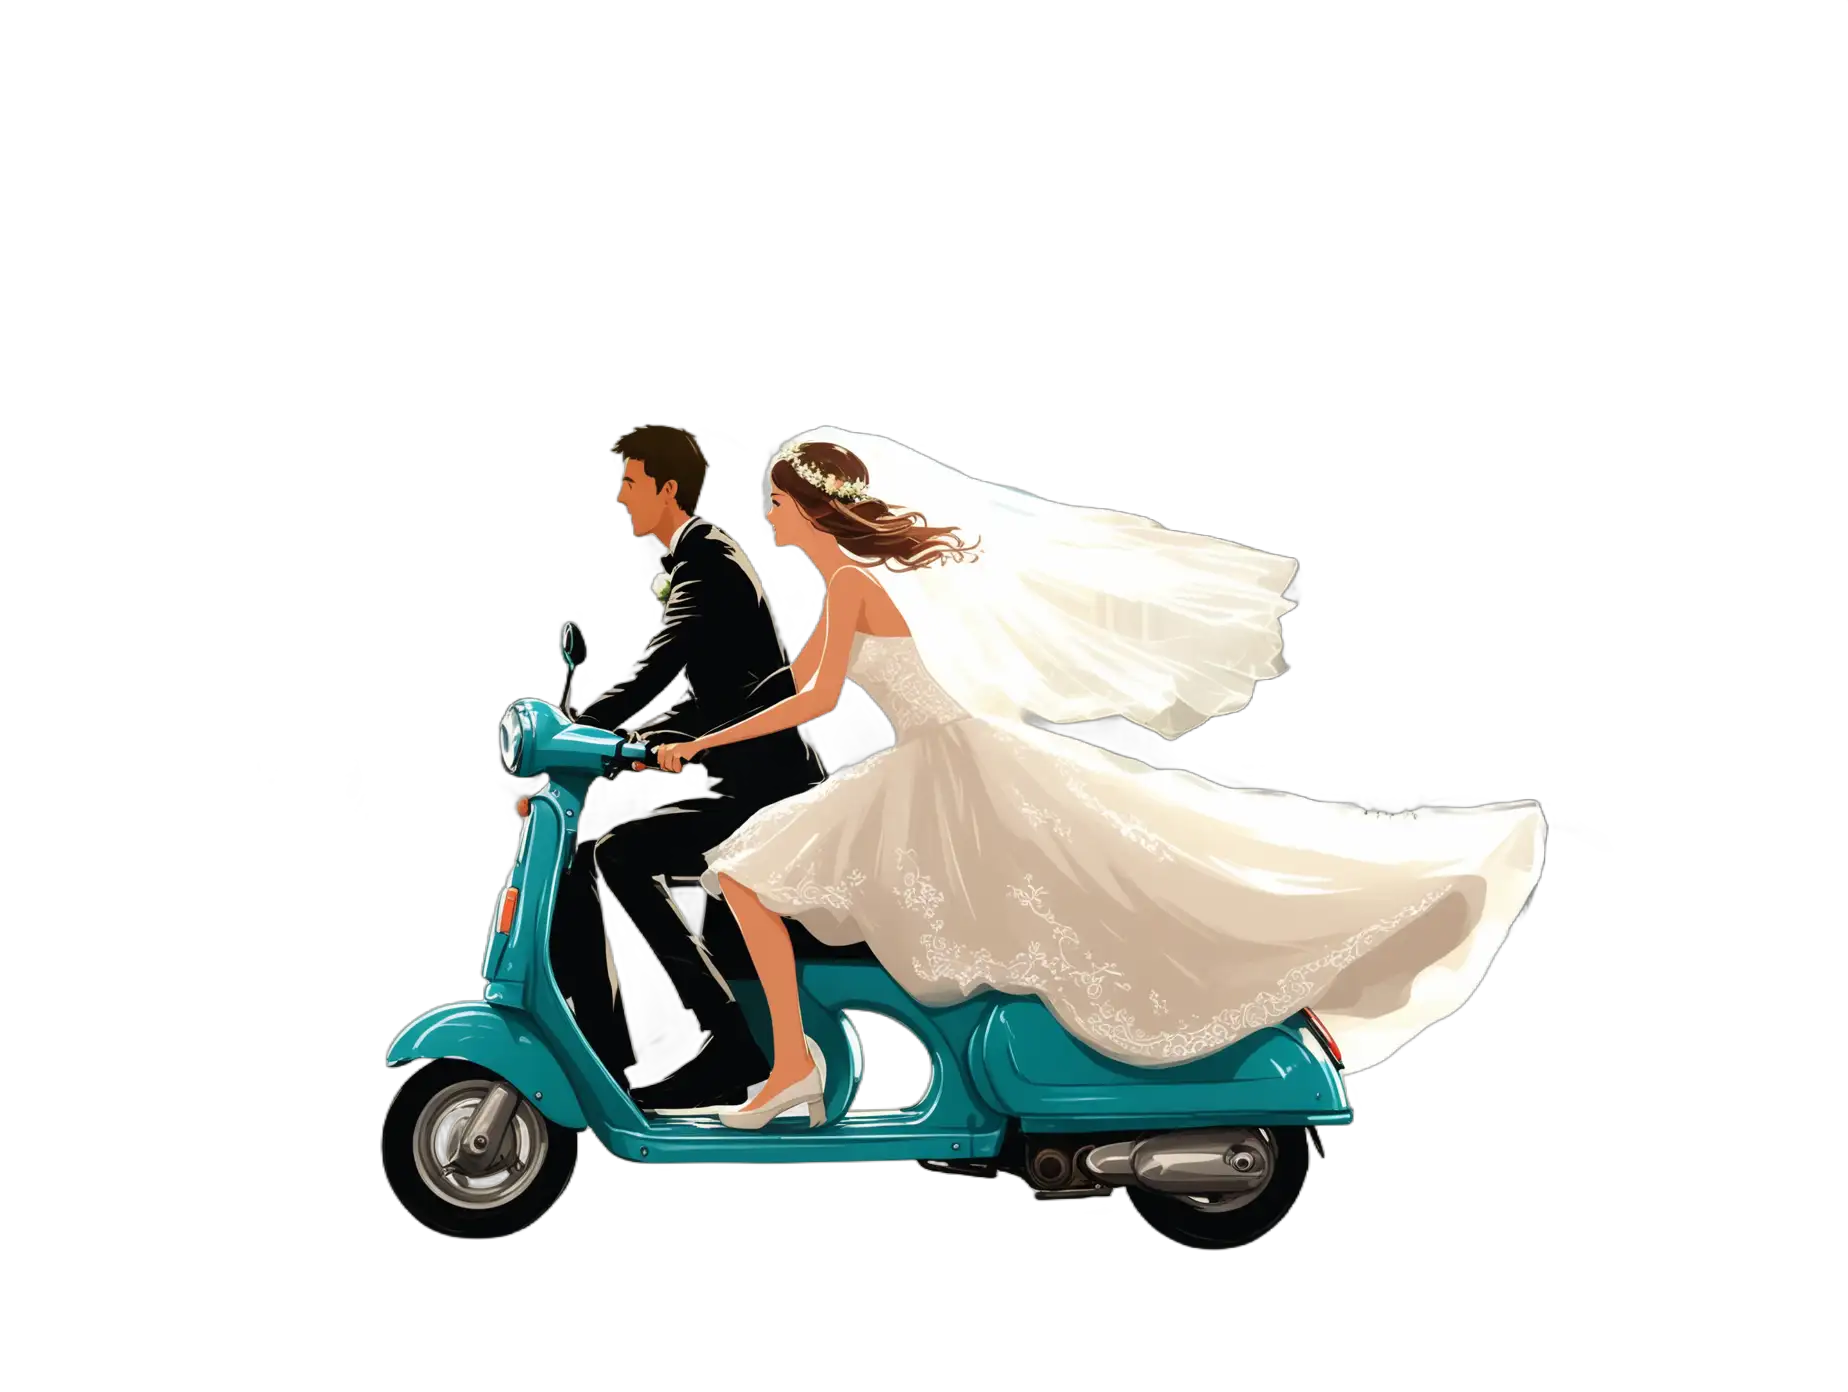 Город, солнце, сочи, море, скутер мчится по дороге, на скутере парень и девушка в свадебном платье, вид сбоку, плоское изображение